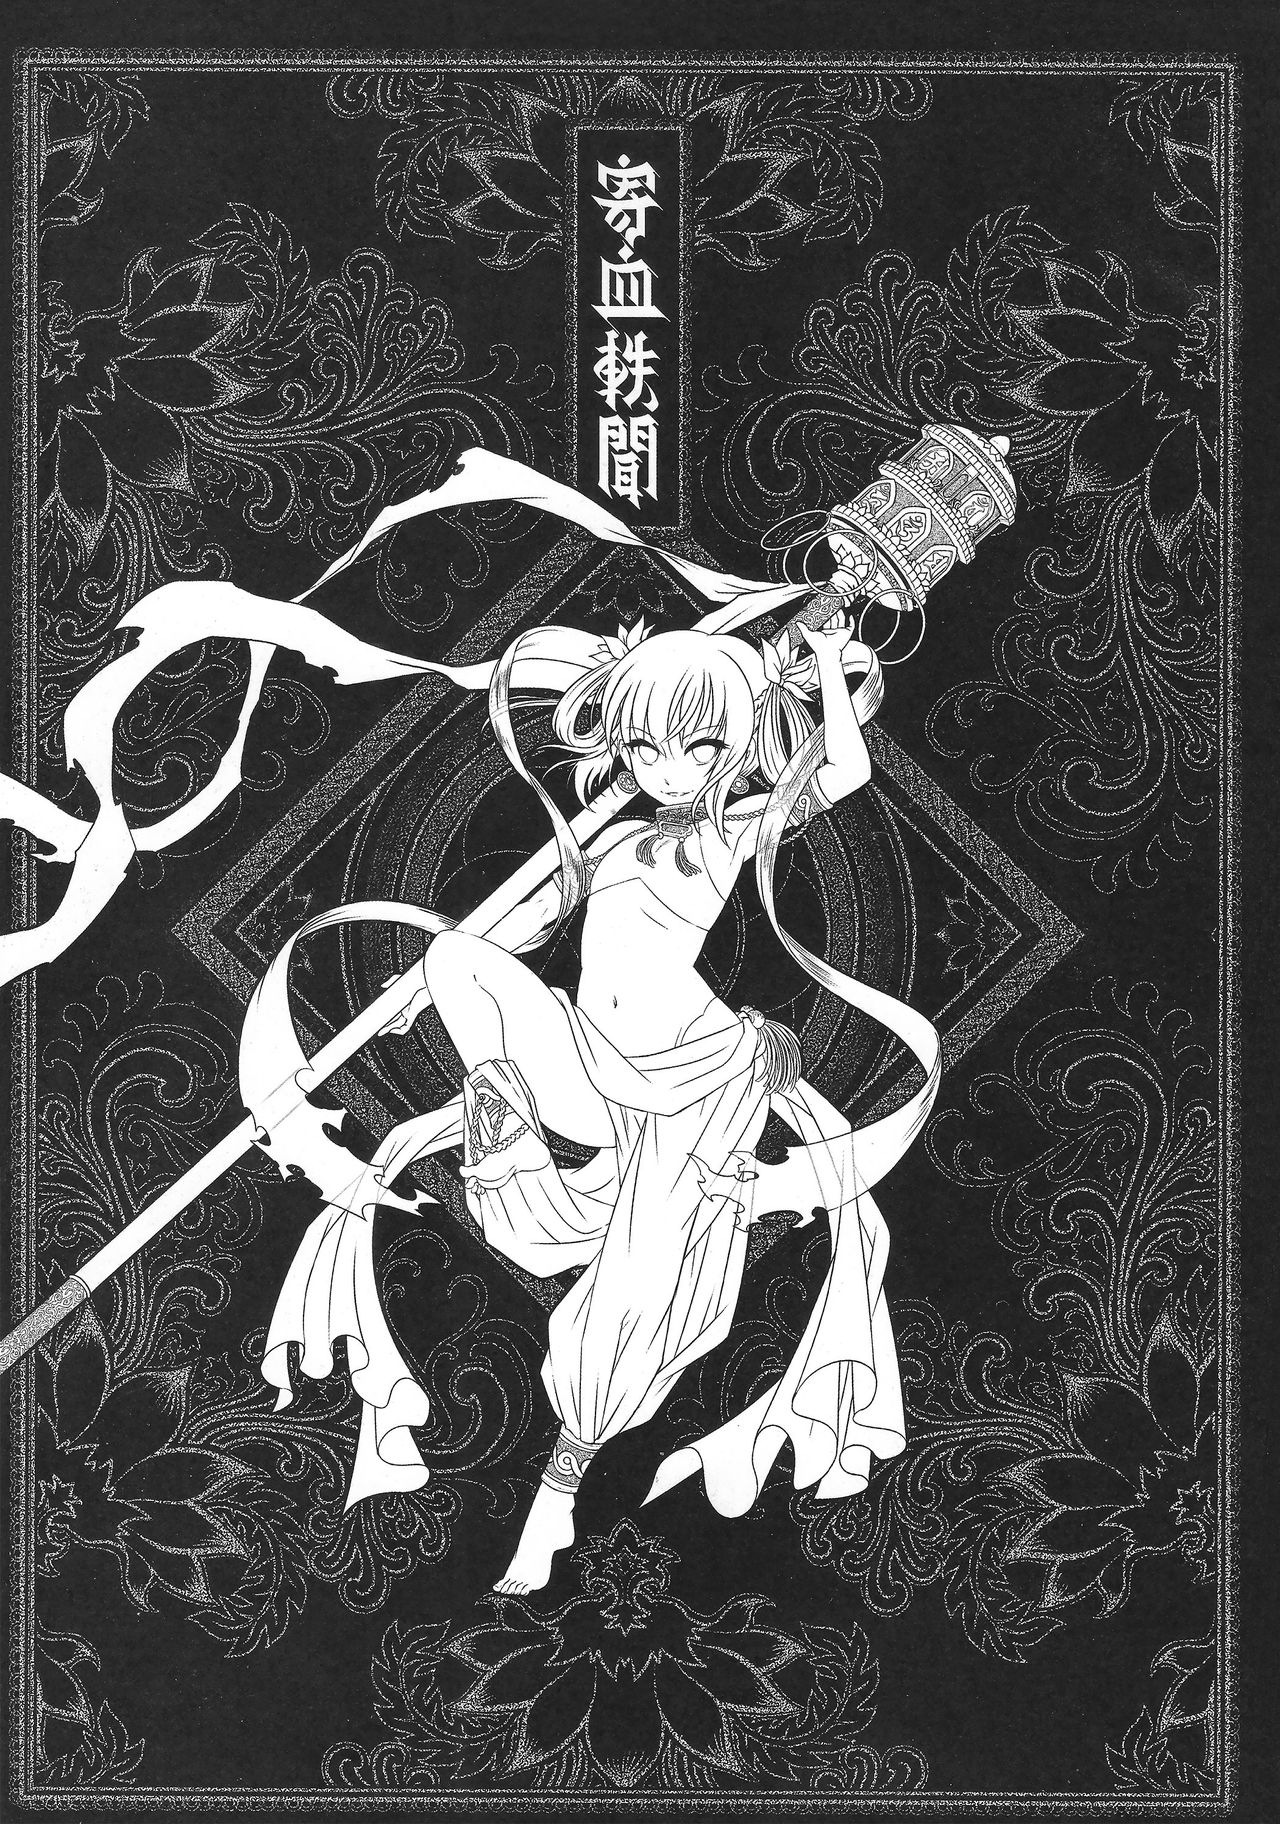 [San Se Fang (Heiqing Langjun)] Tales of BloodPact Vol.1 (Chinese) [三色坊 (黑青郎君)] 寄血軼聞 上冊 [中国語]